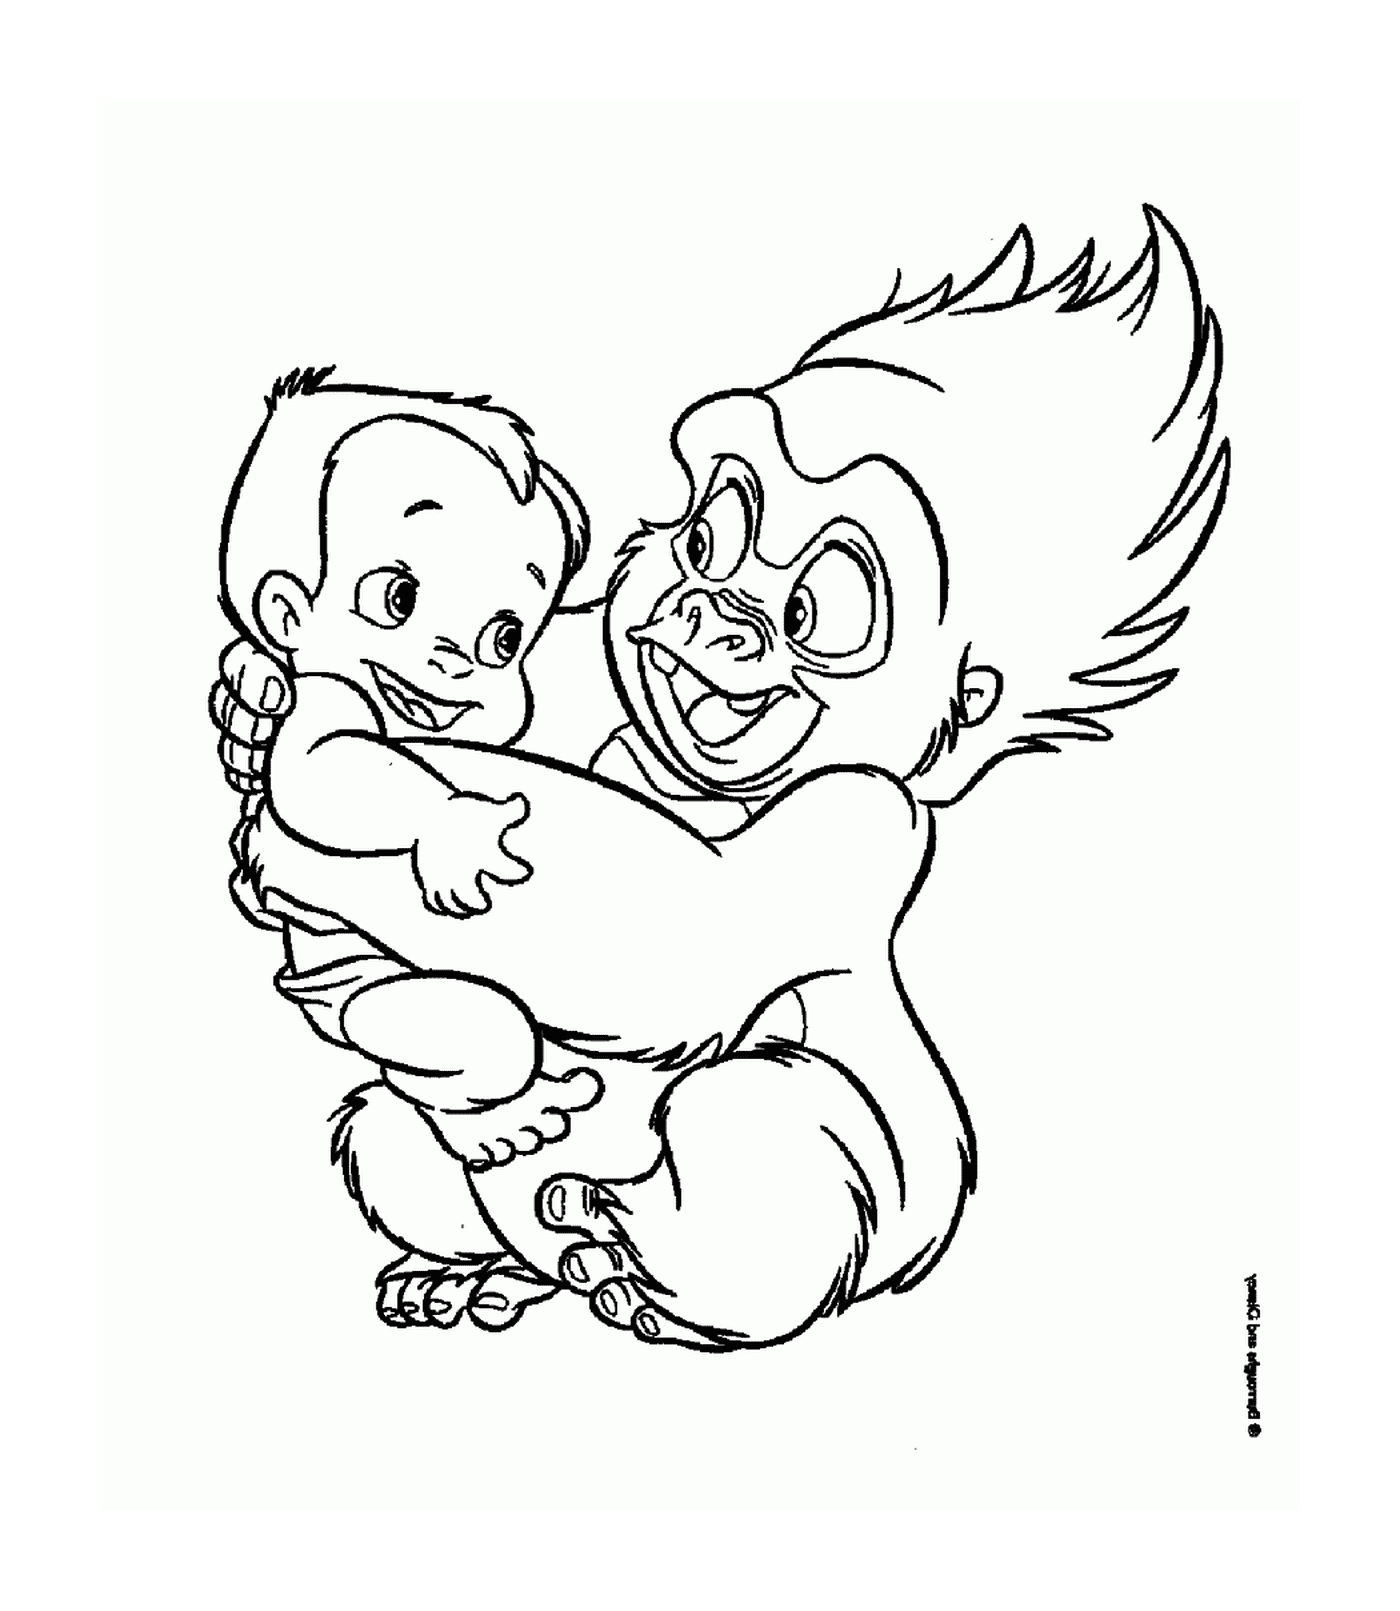  Erwachsener und Baby Gorilla umarmt sich gegenseitig 